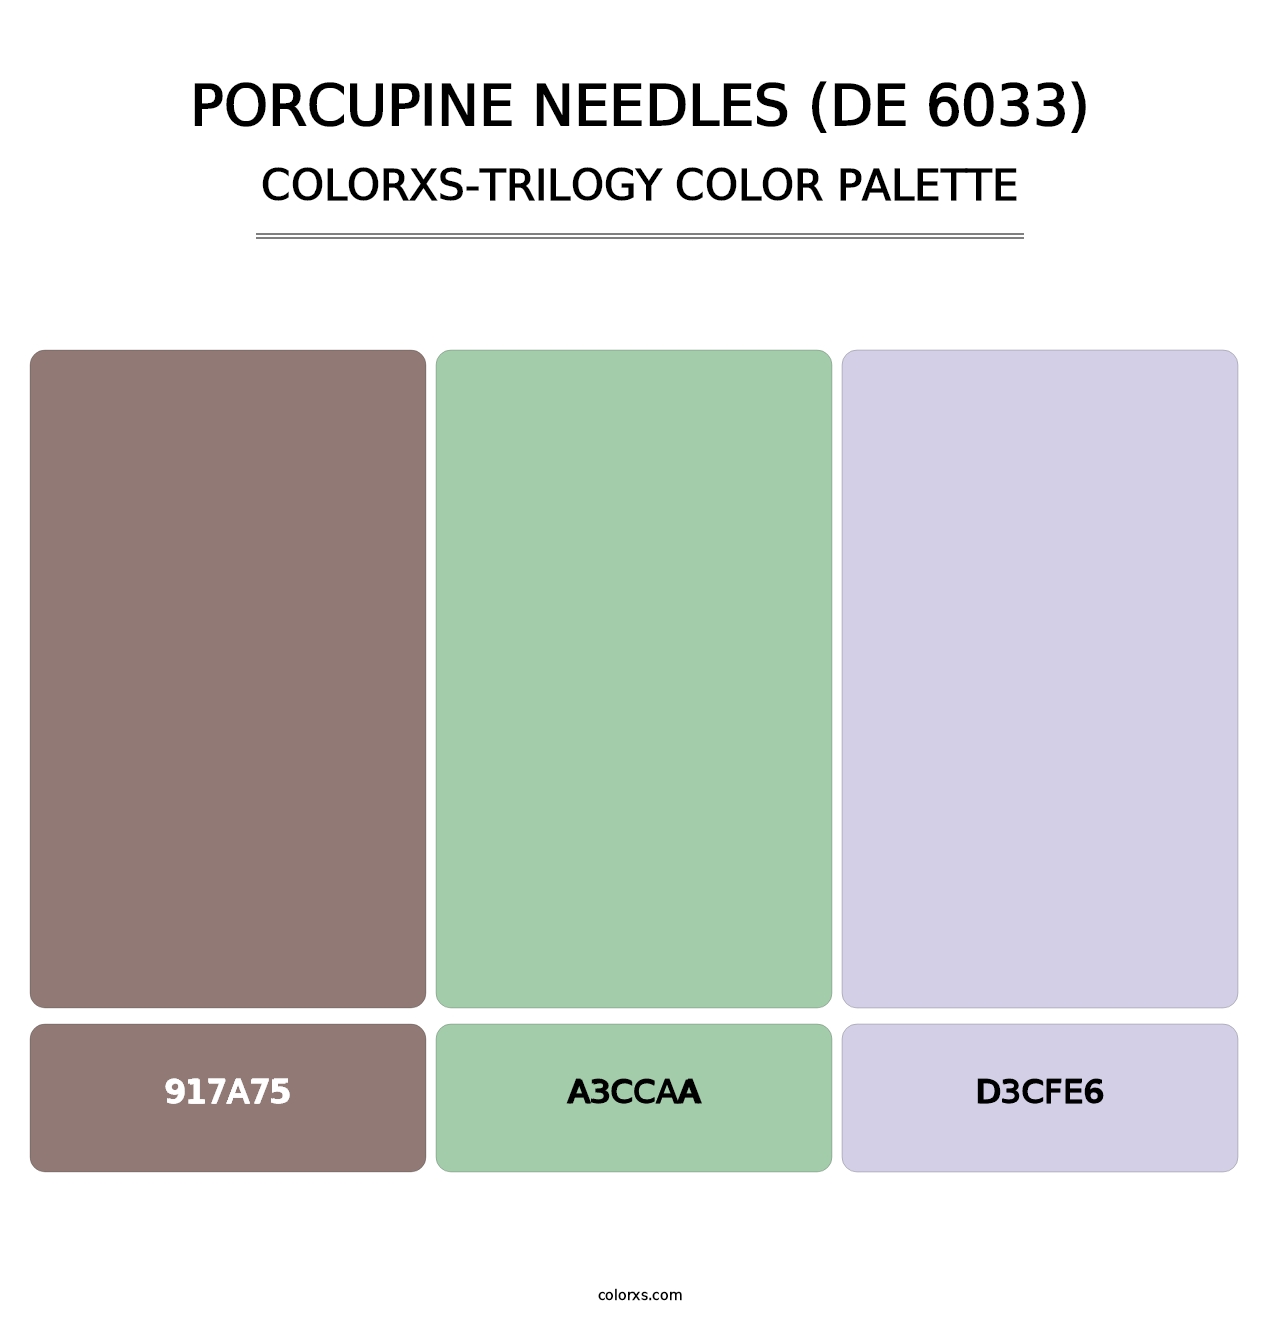 Porcupine Needles (DE 6033) - Colorxs Trilogy Palette